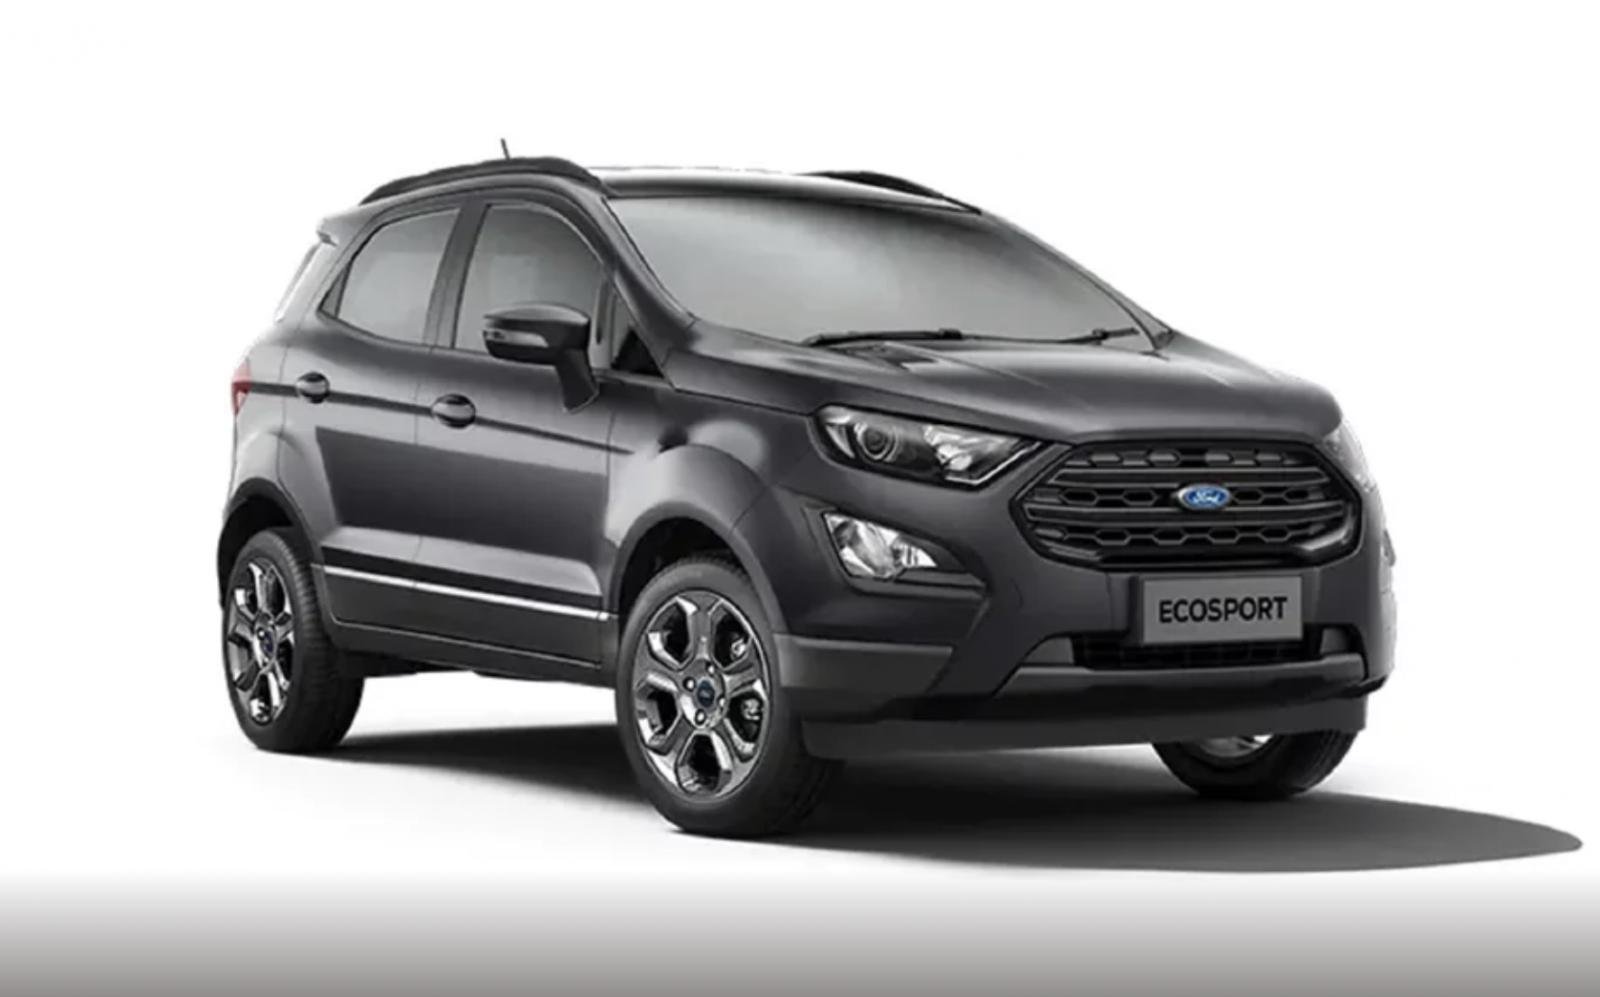 2018 Ford Ecosport grey